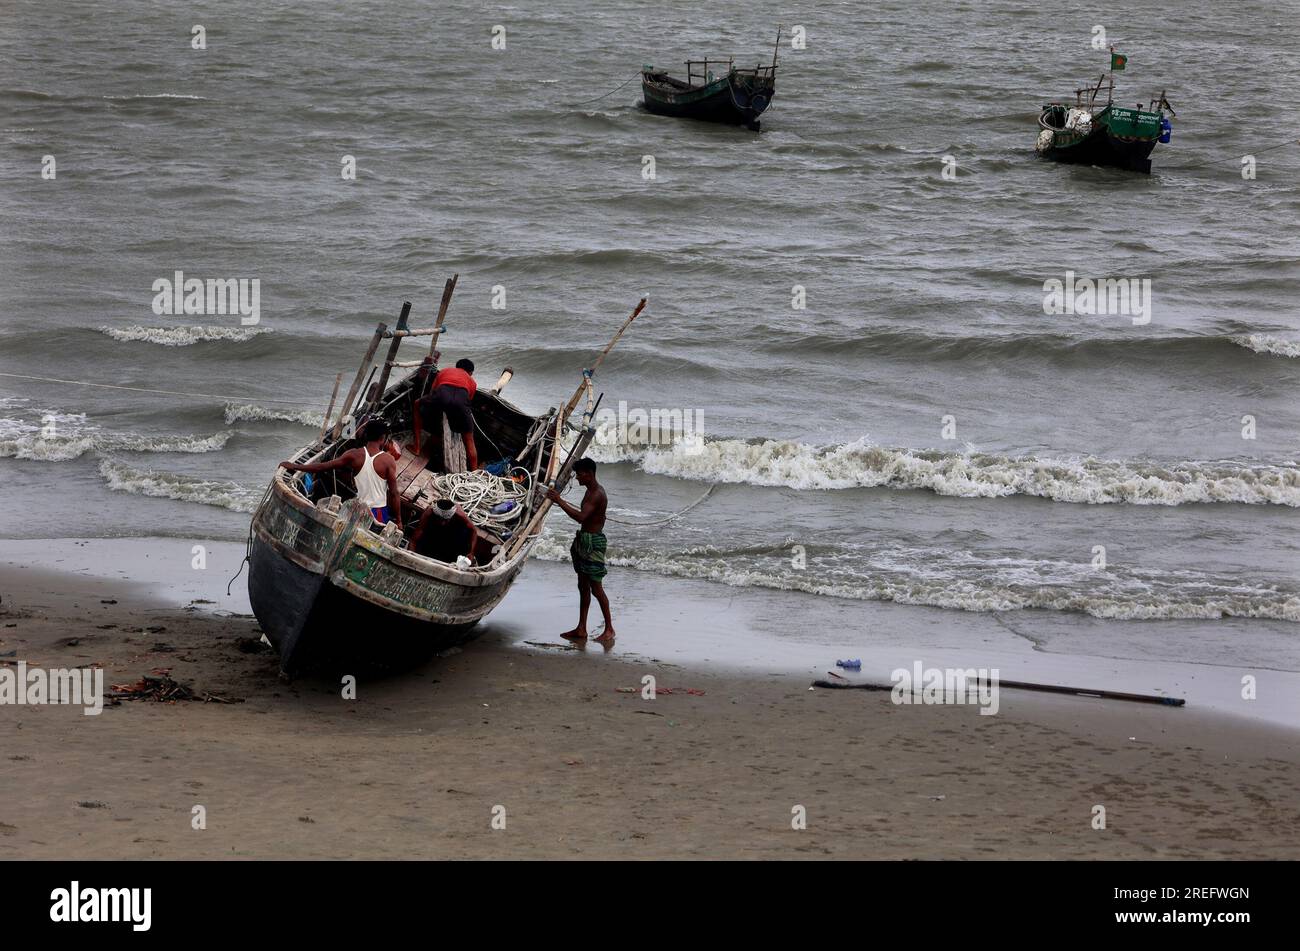 Chittagong, Patenga, Bangladesch. 26. Juli 2023. 28. Juli 2023. Chittagong, Bangladesch: Die Fangsaison hat nach 65 Tagen Fischfang im Golf von Bengal aufgrund eines Verbots der Regierung in vollem Gange begonnen. Bei dieser Gelegenheit hat sich das Arbeitsengagement der patengischen Küstenfischer in Chittagong, Bangladesch, erhöht. Fischer kommen und gehen zum Fischen im Meer mit kleinen und großen Booten aus Kunststoff und Holz. (Kreditbild: © Mohammed Shajahan/ZUMA Press Wire) NUR REDAKTIONELLE VERWENDUNG! Nicht für den kommerziellen GEBRAUCH! Stockfoto